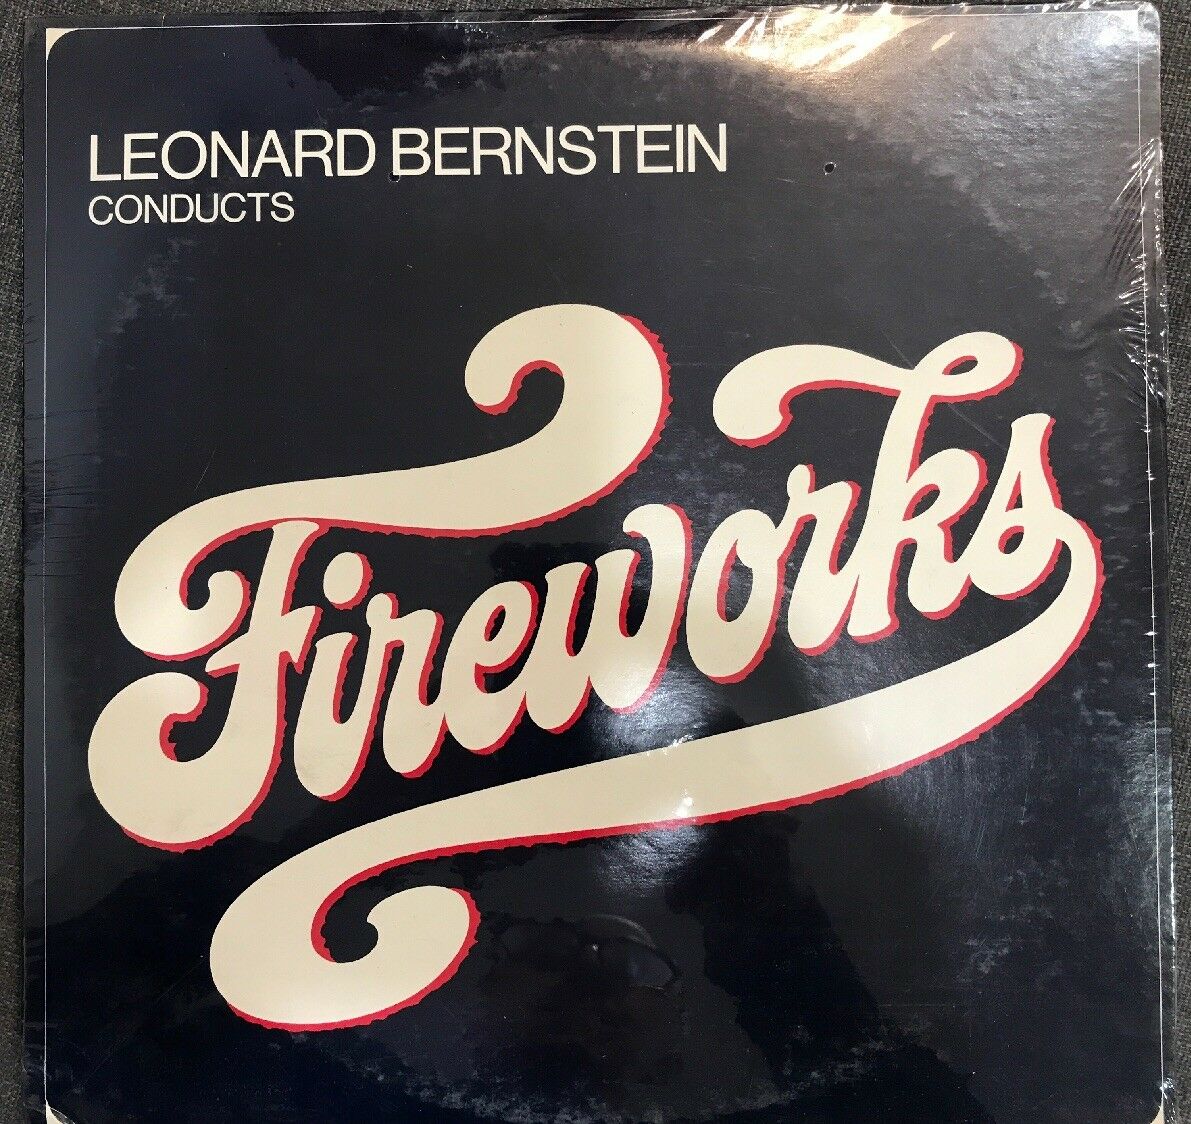 Leonard Bernstein Conducts Fireworks